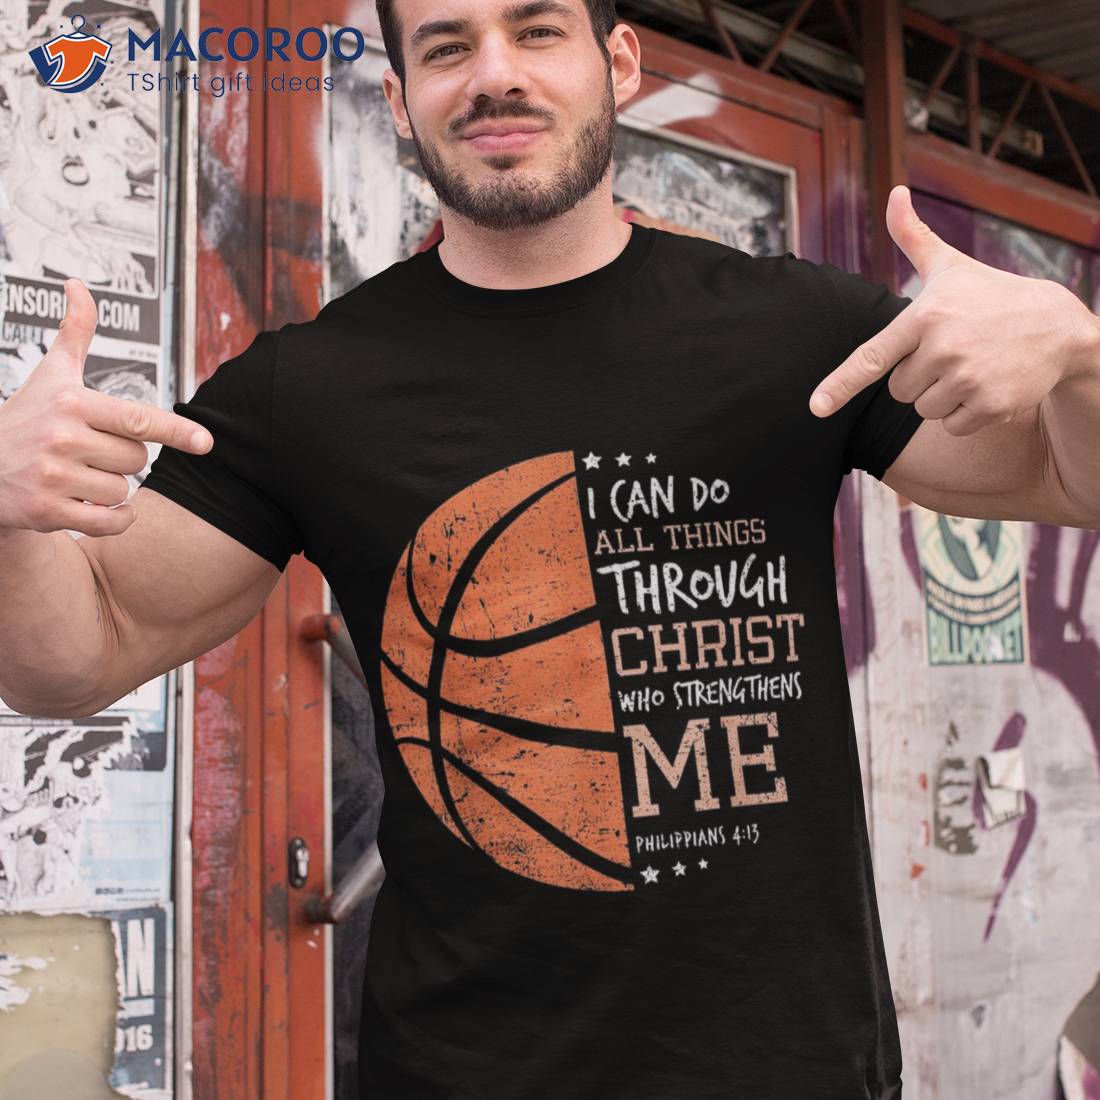 basketball shirt design ideas